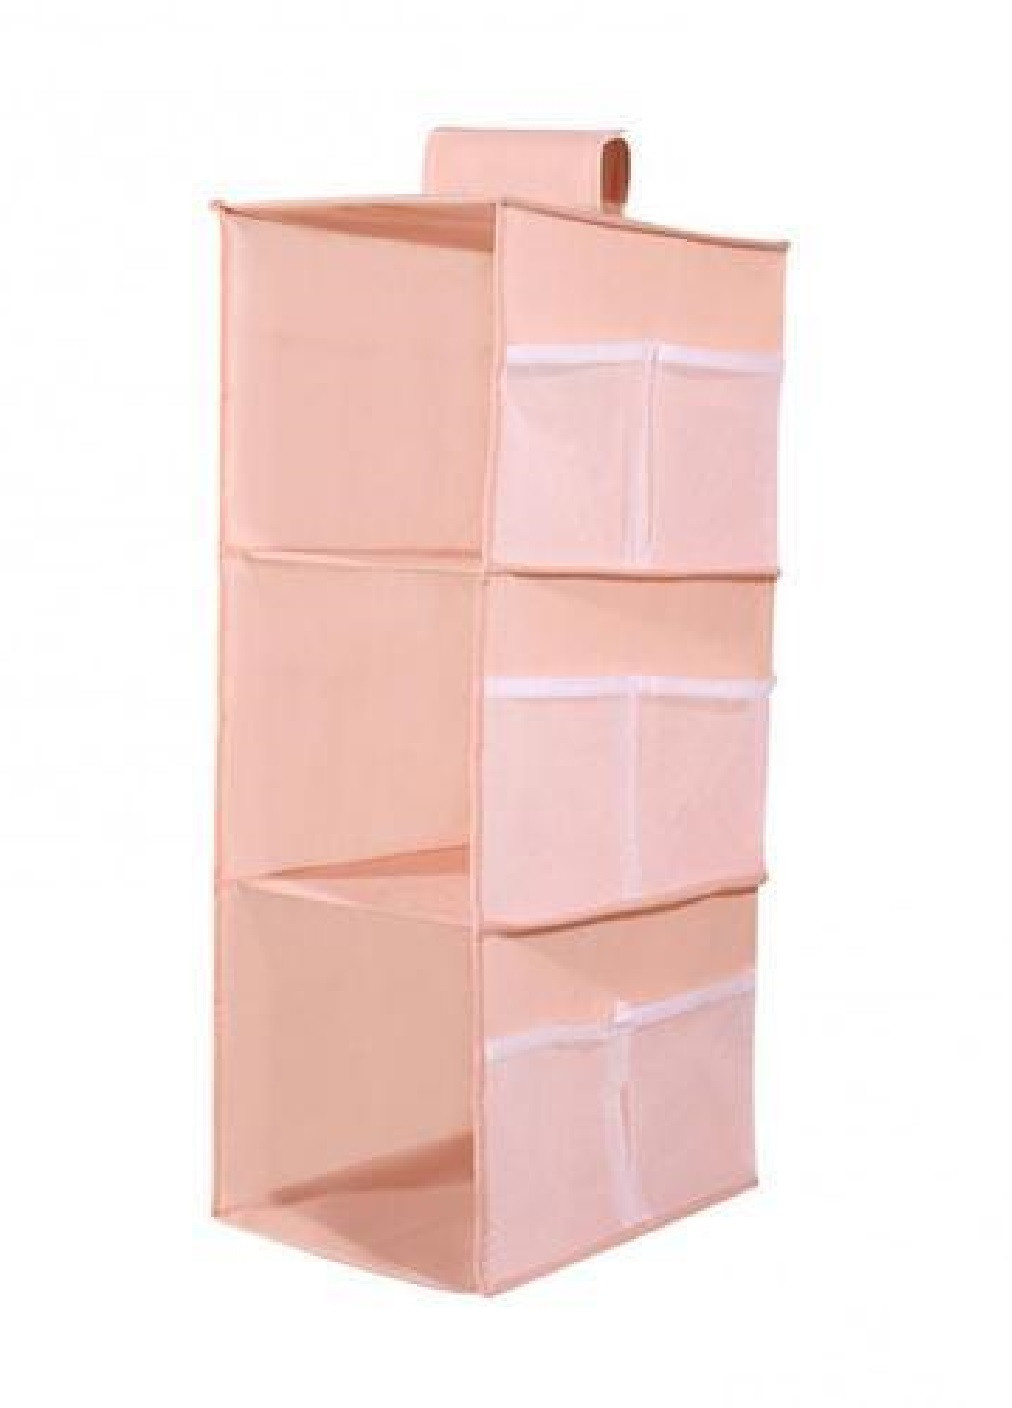 Подвесной органайзер модуль шкаф для хранения одежды обуви вещей сумок на 3 ячейки 60х30х22 см (474426-Prob) Розовый Unbranded (258417108)